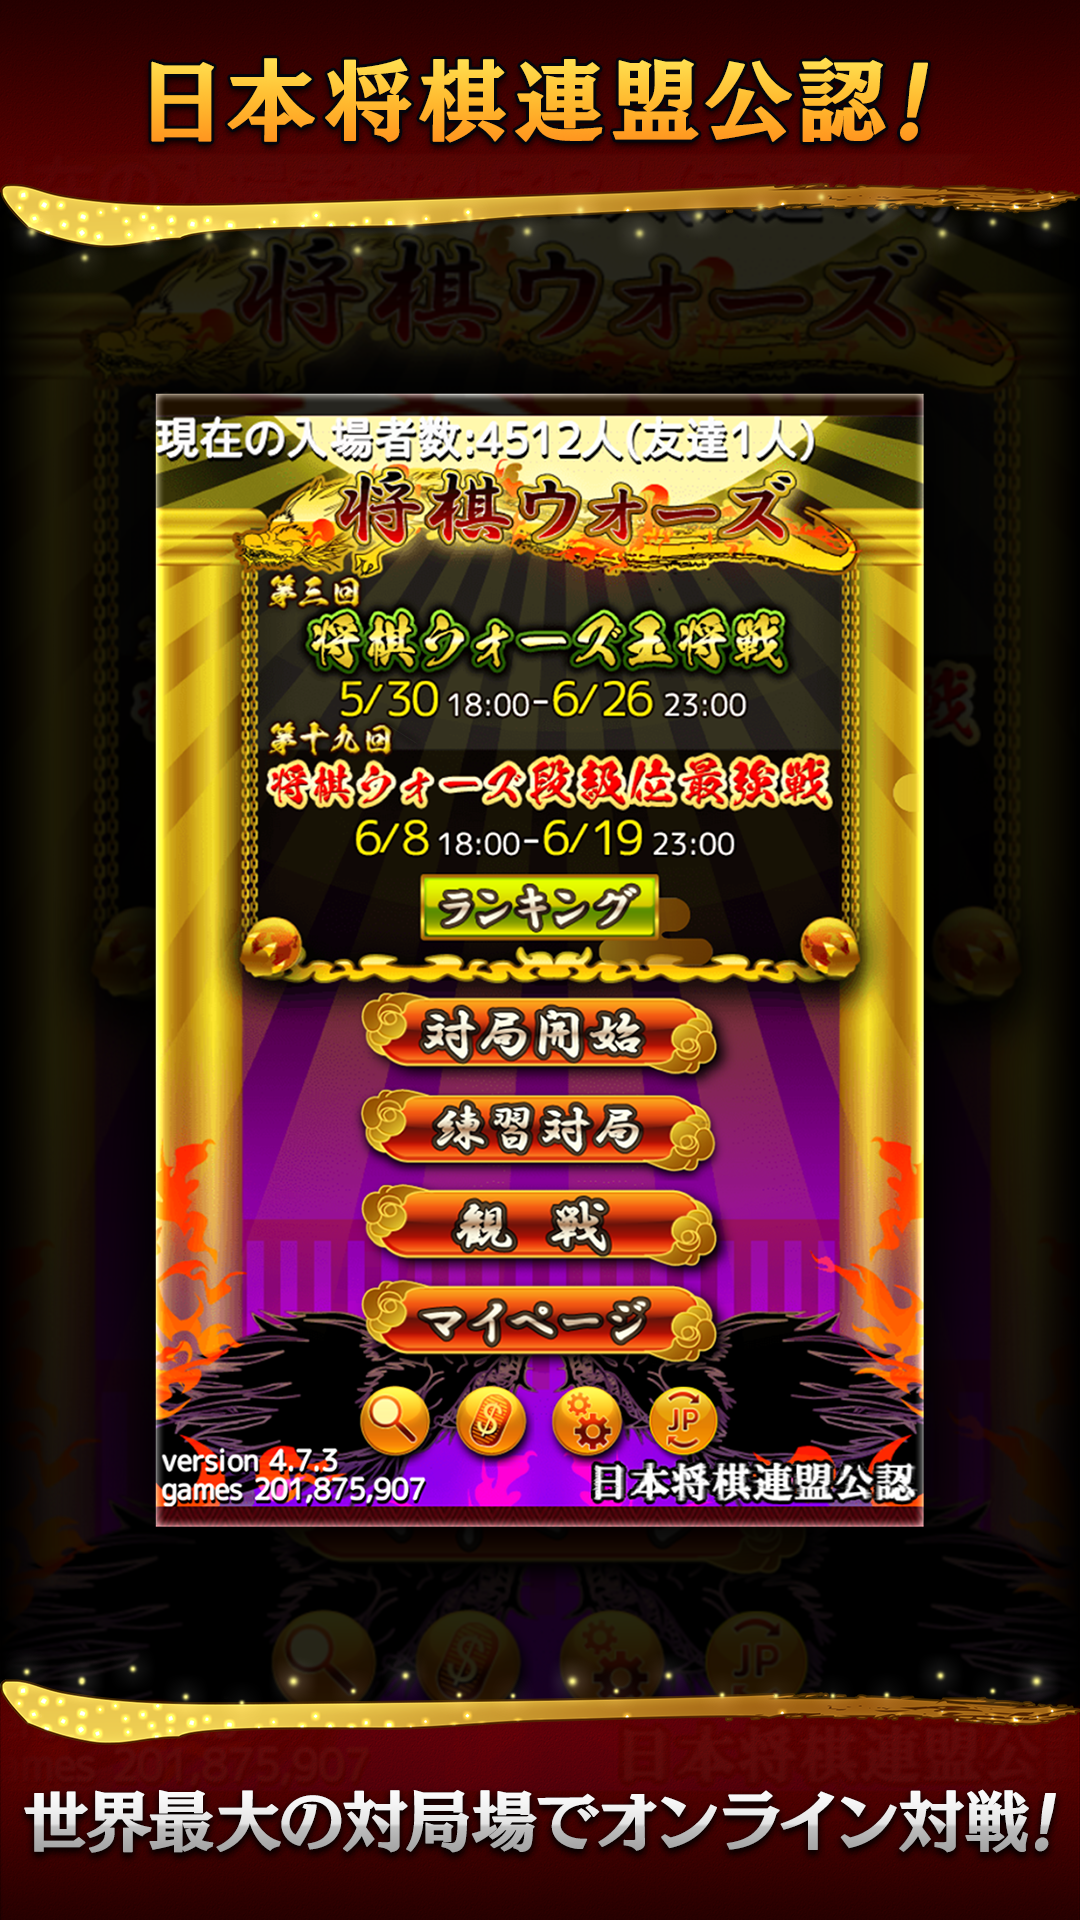 Android application Shogi Wars screenshort